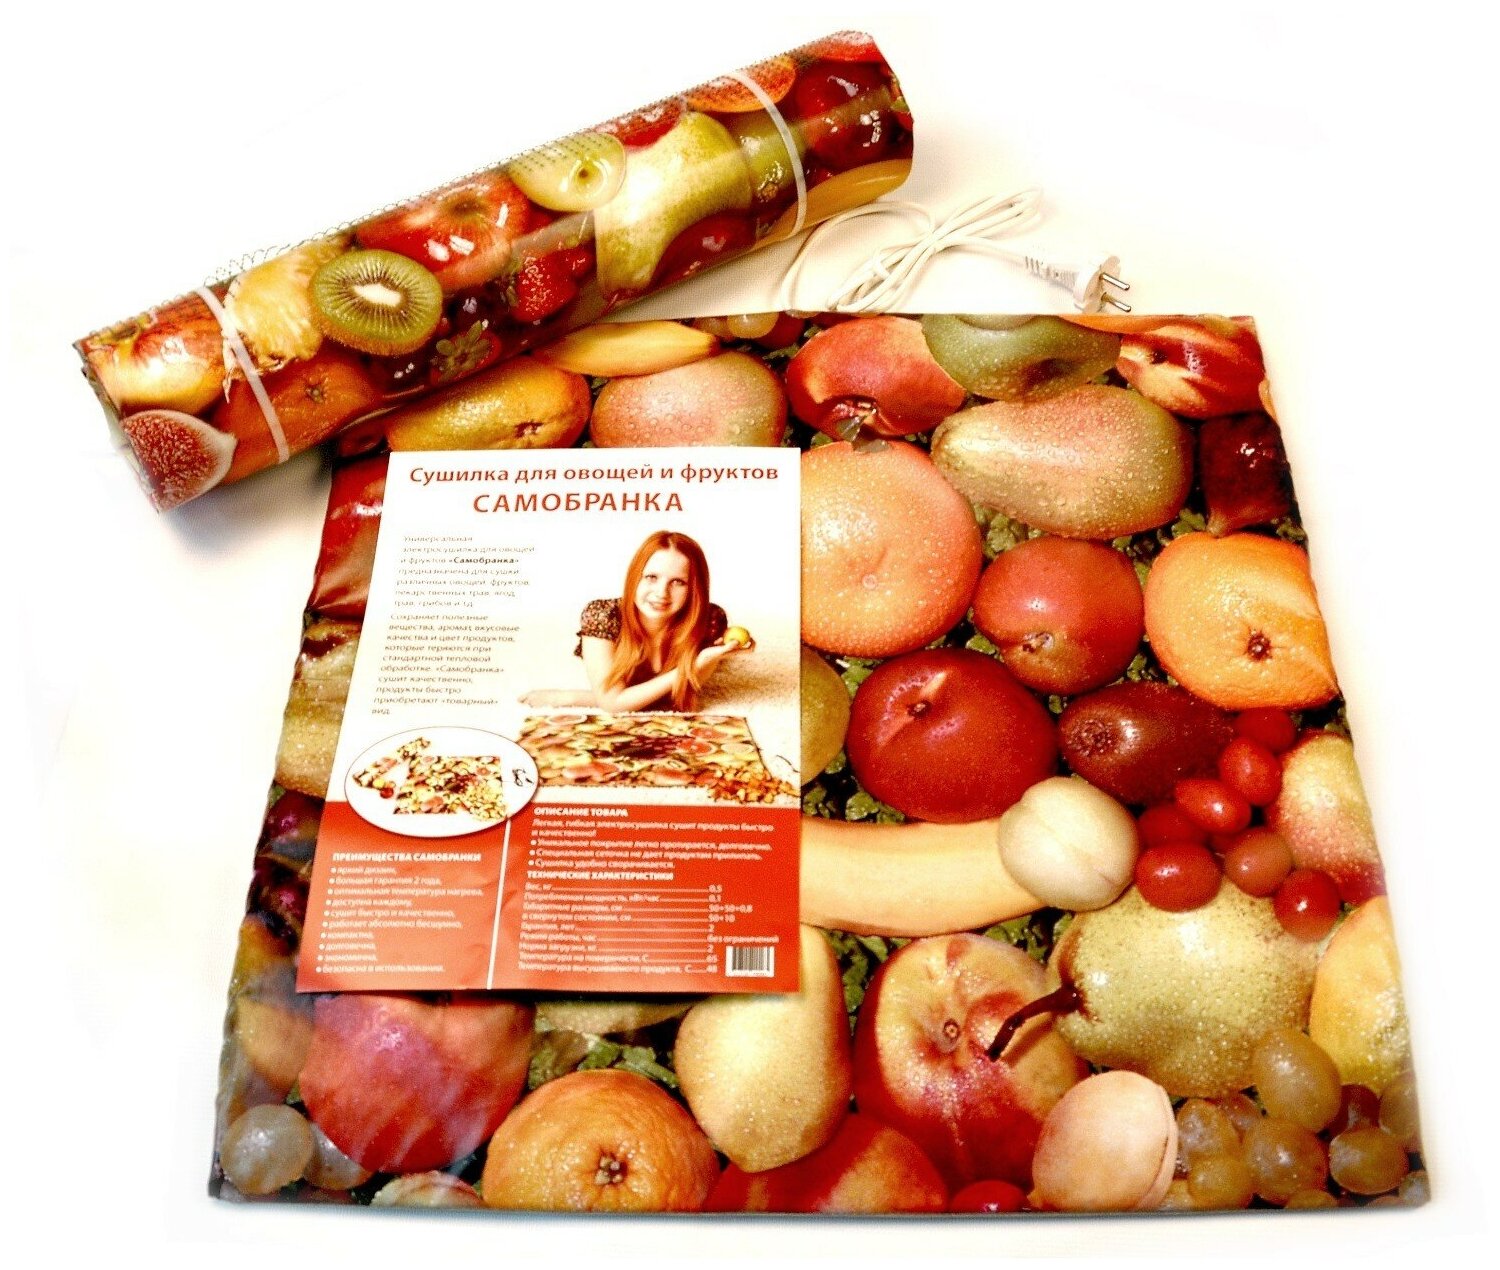 Коврик сушилка для овощей, фруктов, грибов, ягод и трав Самобранка Тепломакс 50x50 см.